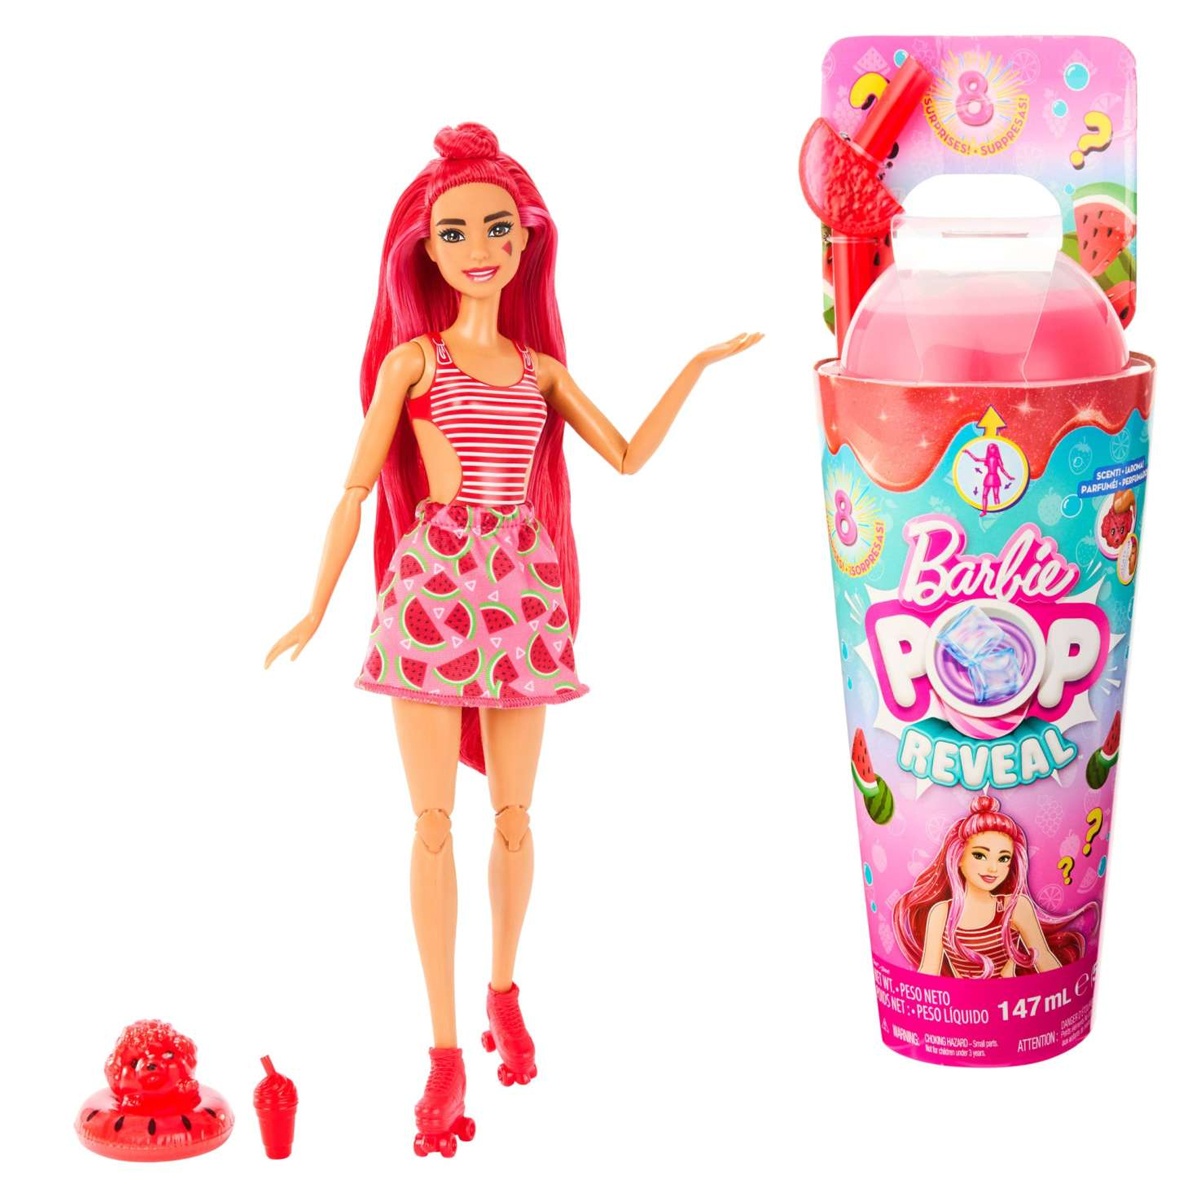 Barbie Pop Reveal Fruit Serie Wassermelone